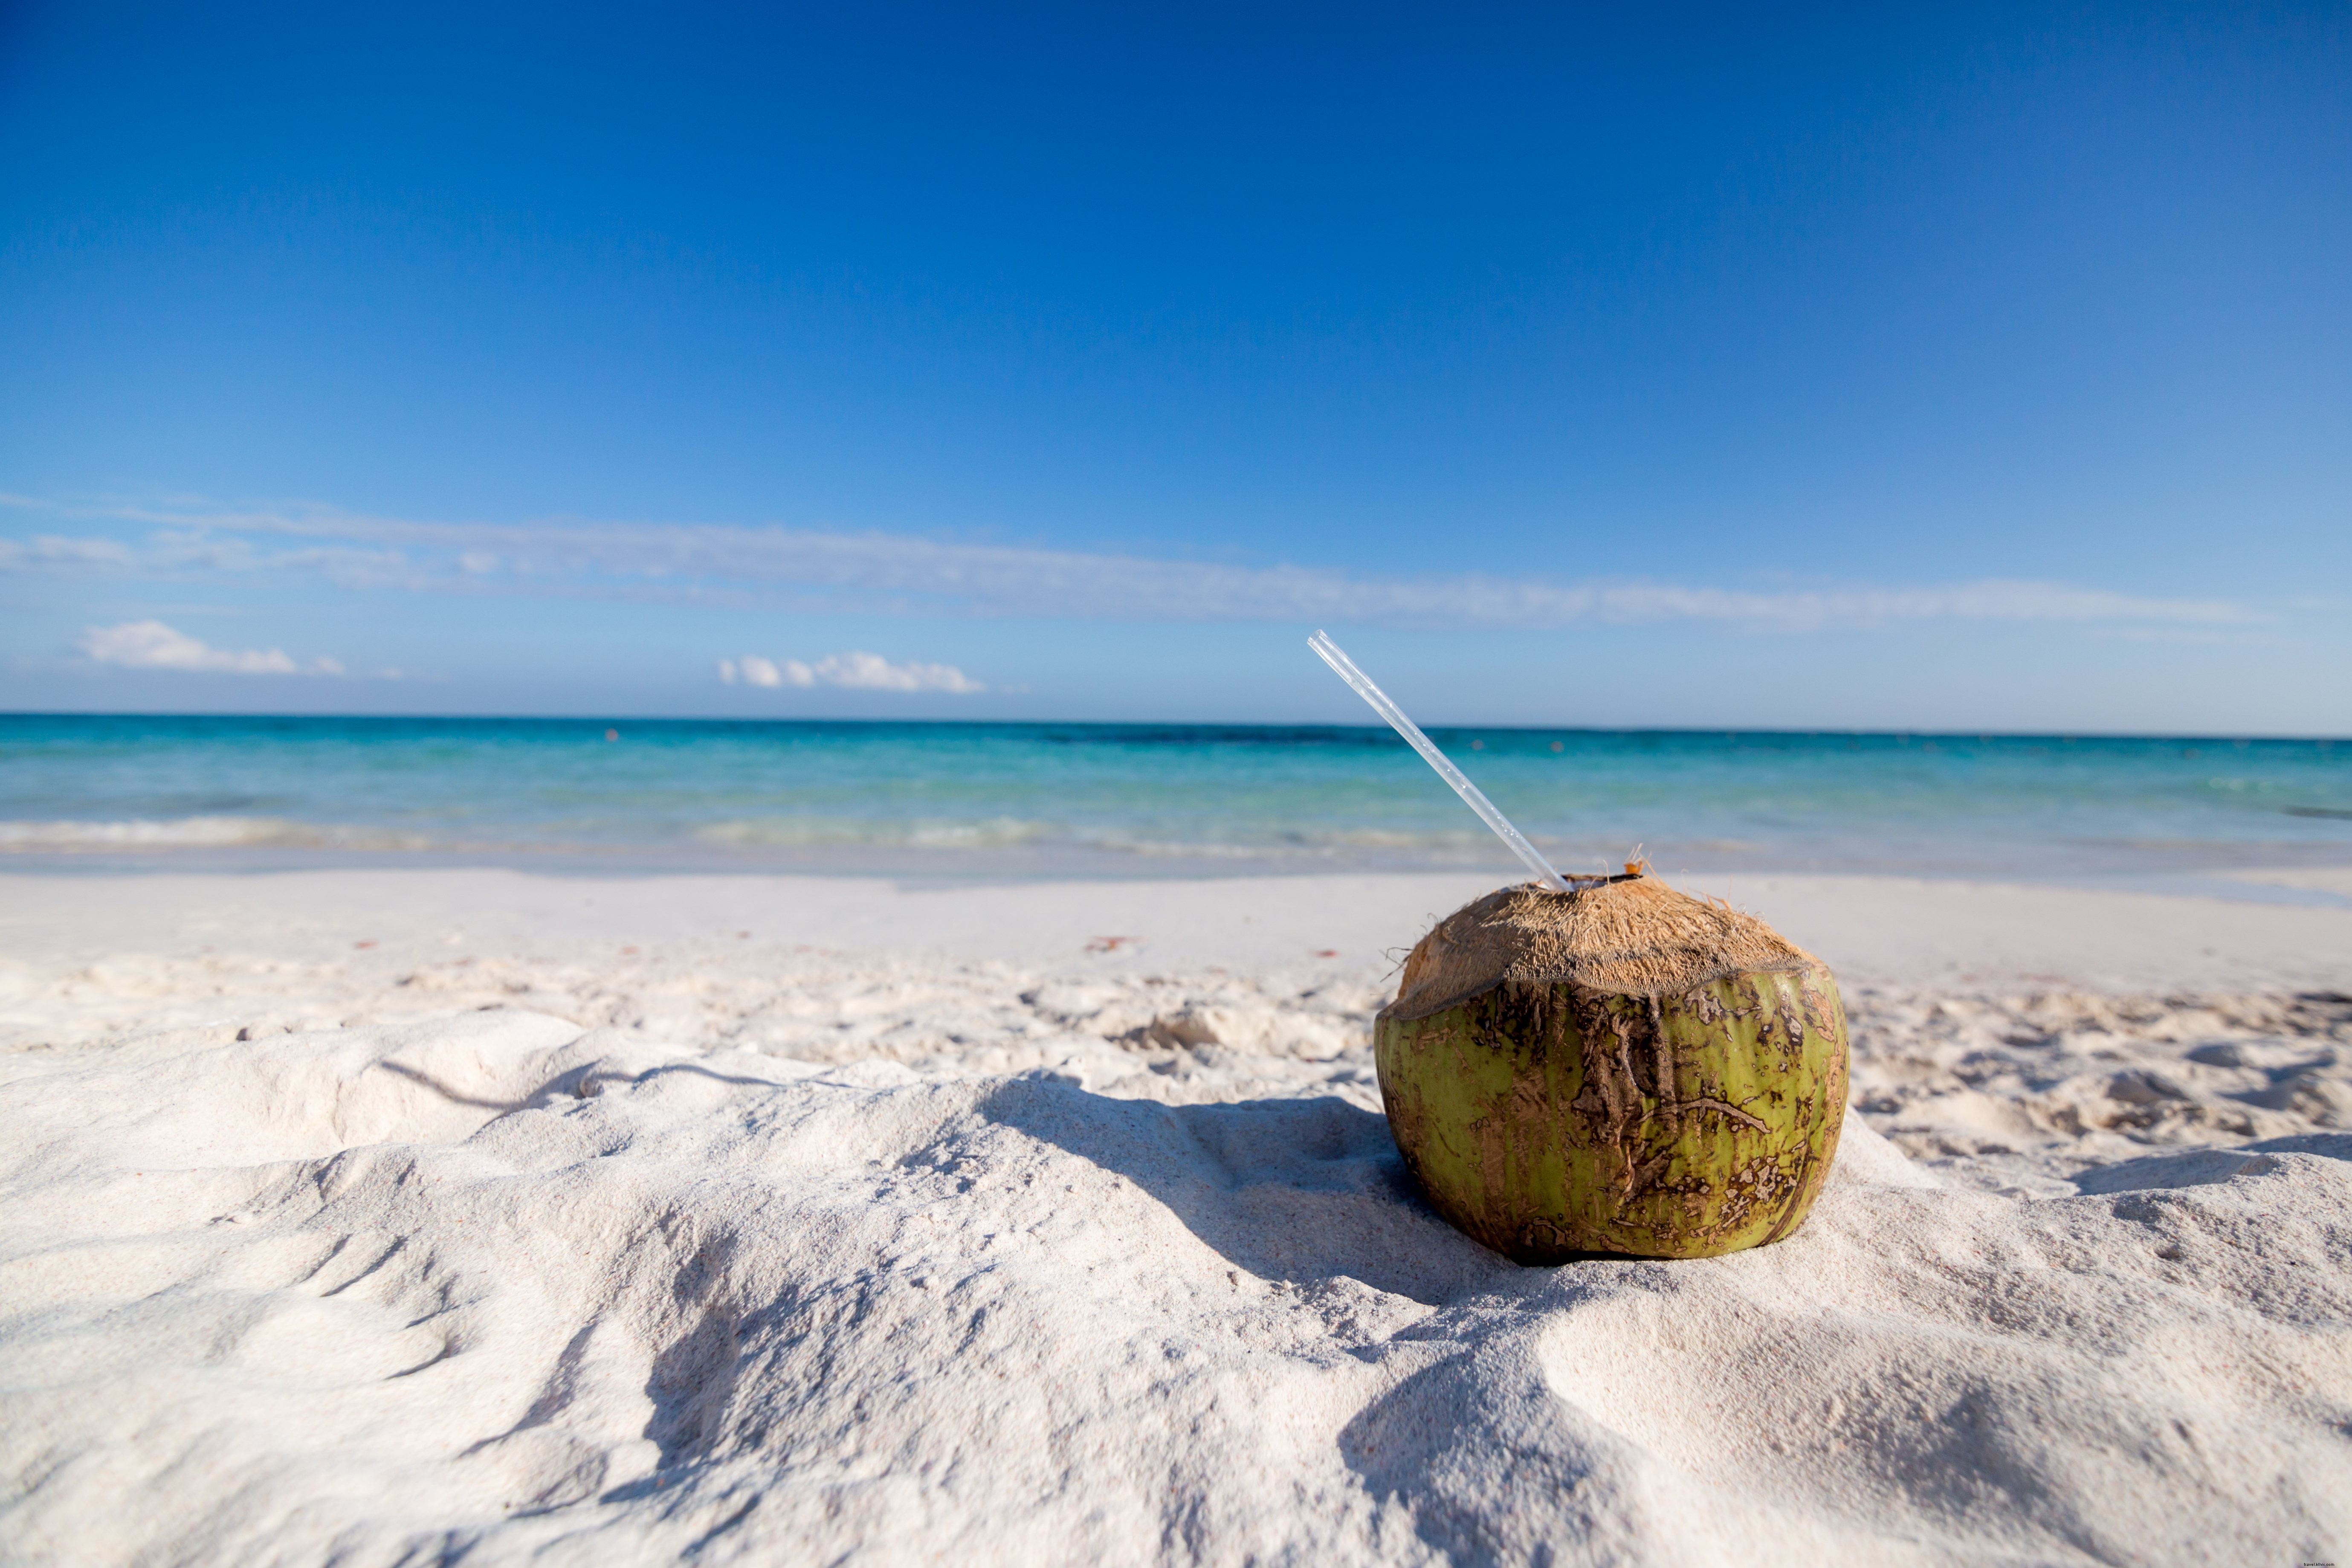 Bevanda al cocco sulla foto della spiaggia